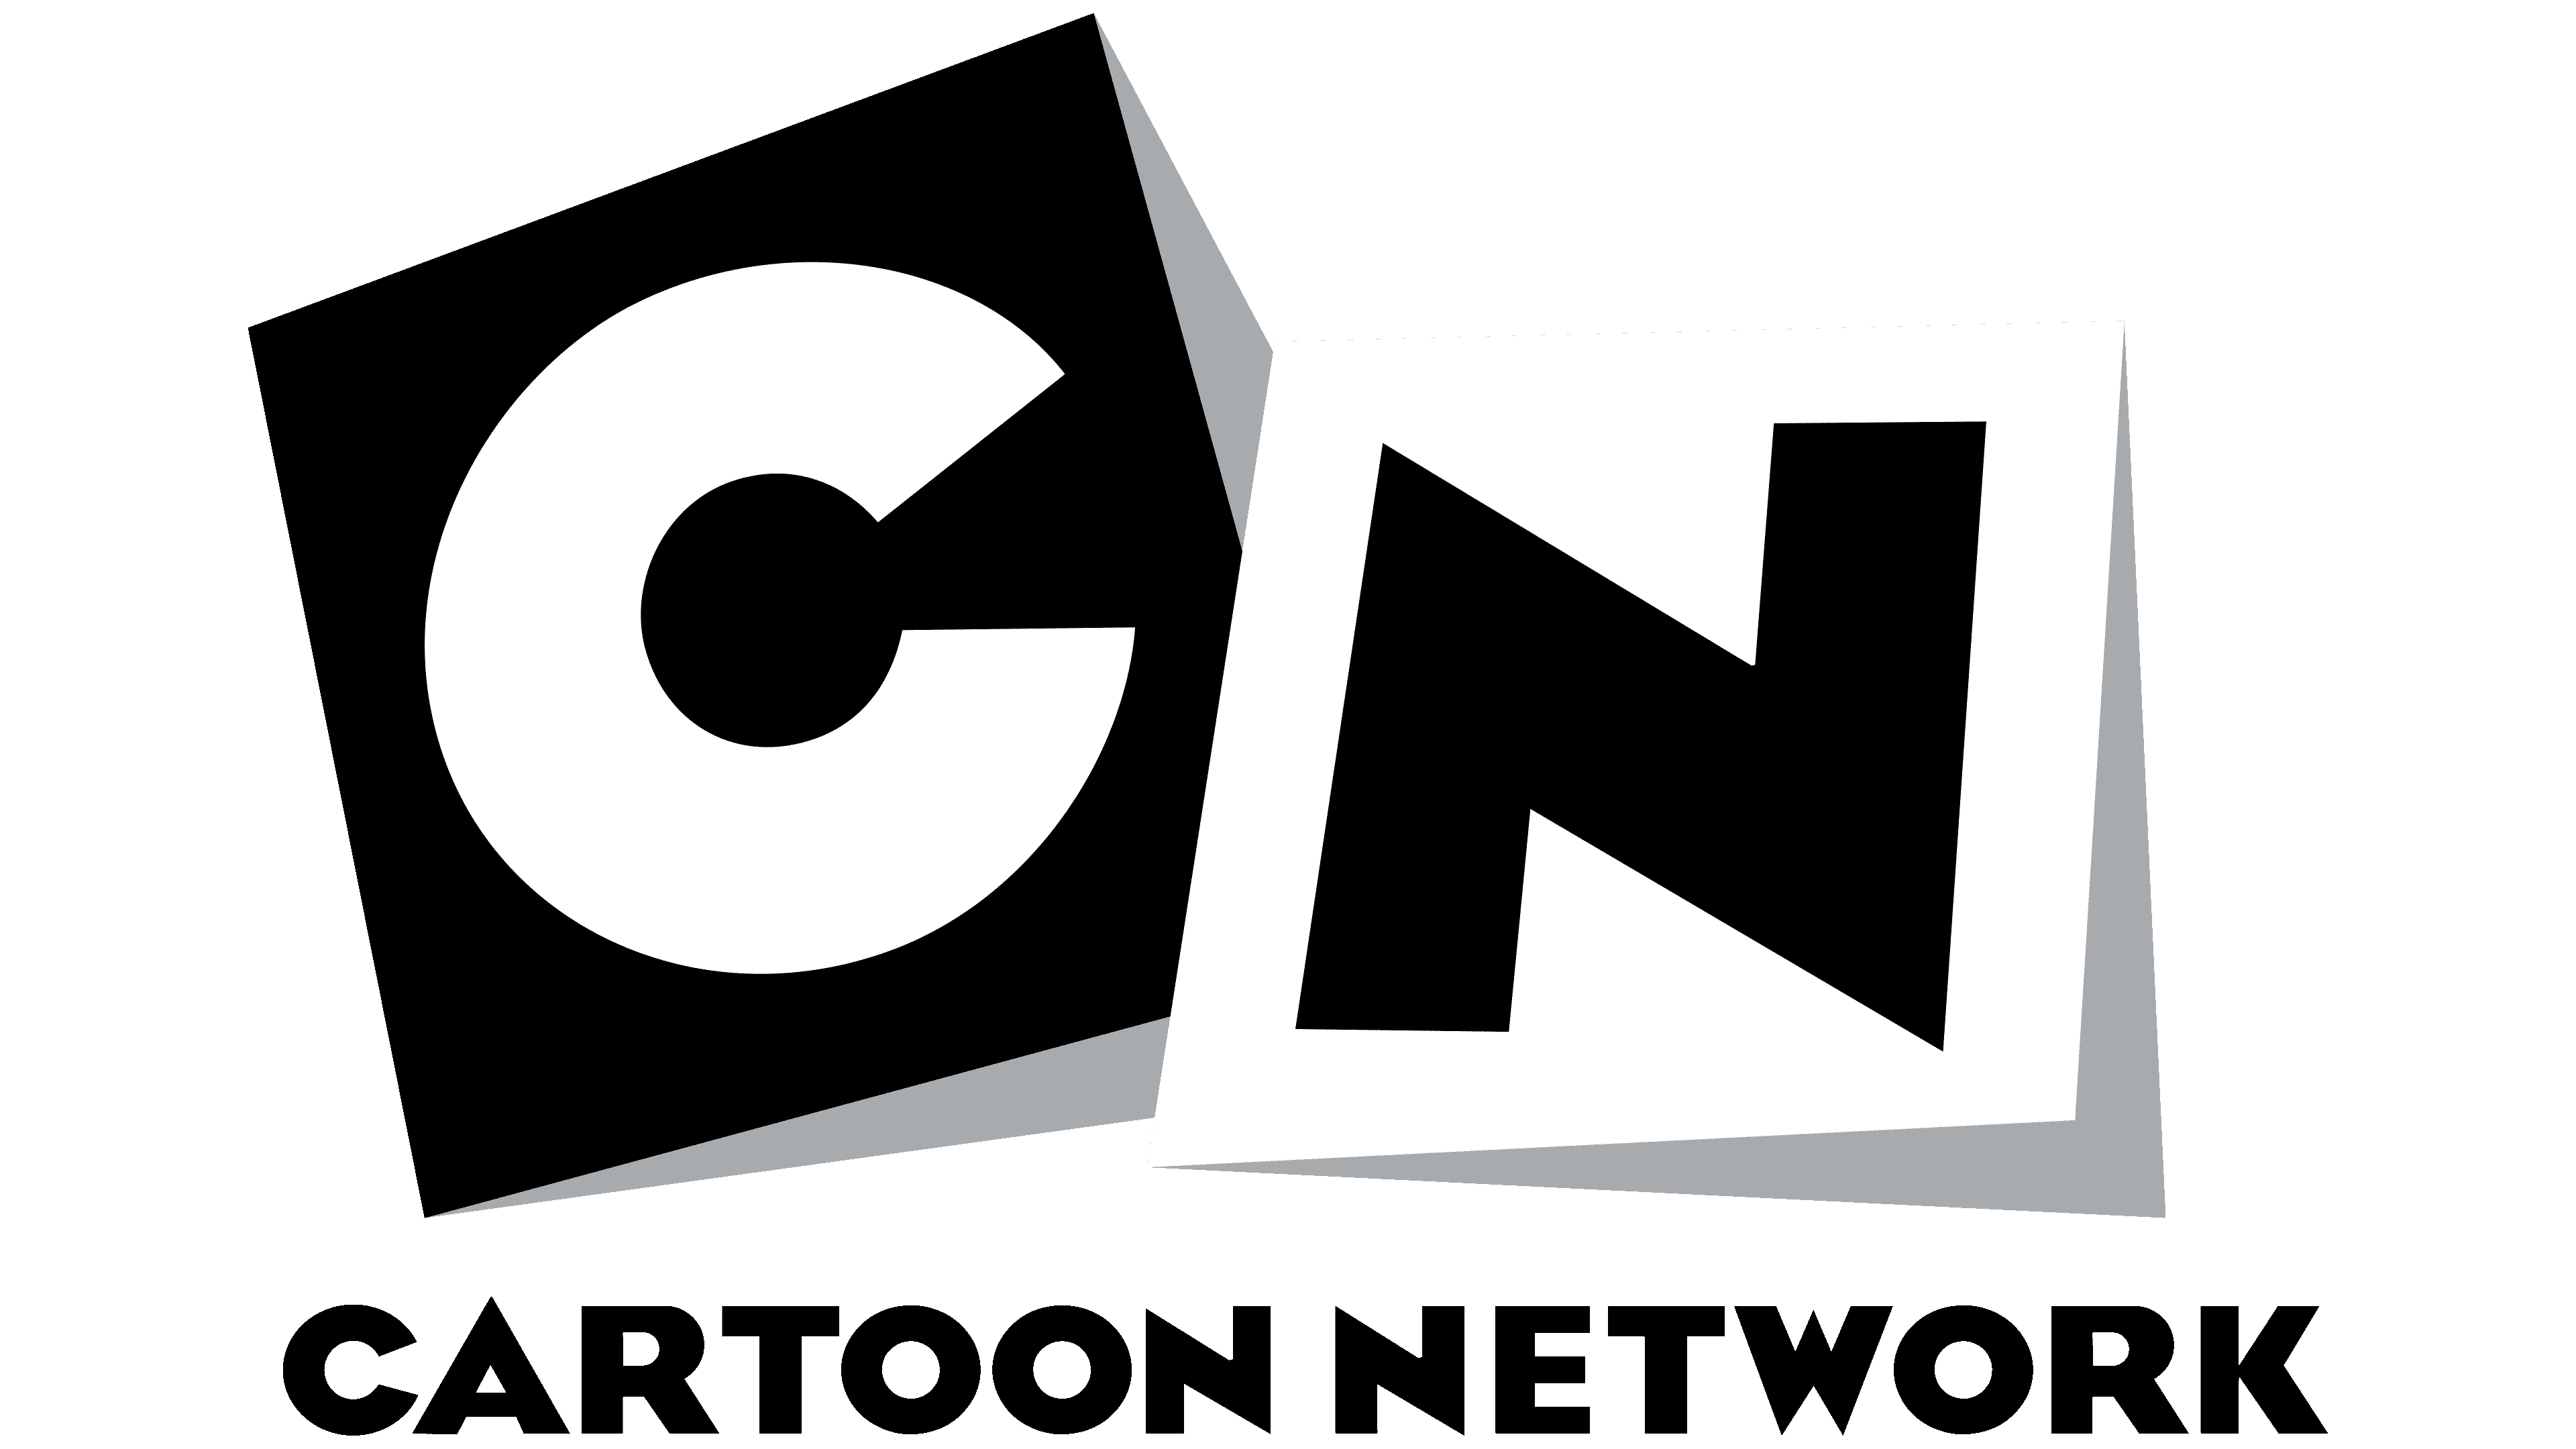 Логотип канала Картун нетворк. Cartoon Network логотип 2010. CN логотип. Картун нетворк 2009.